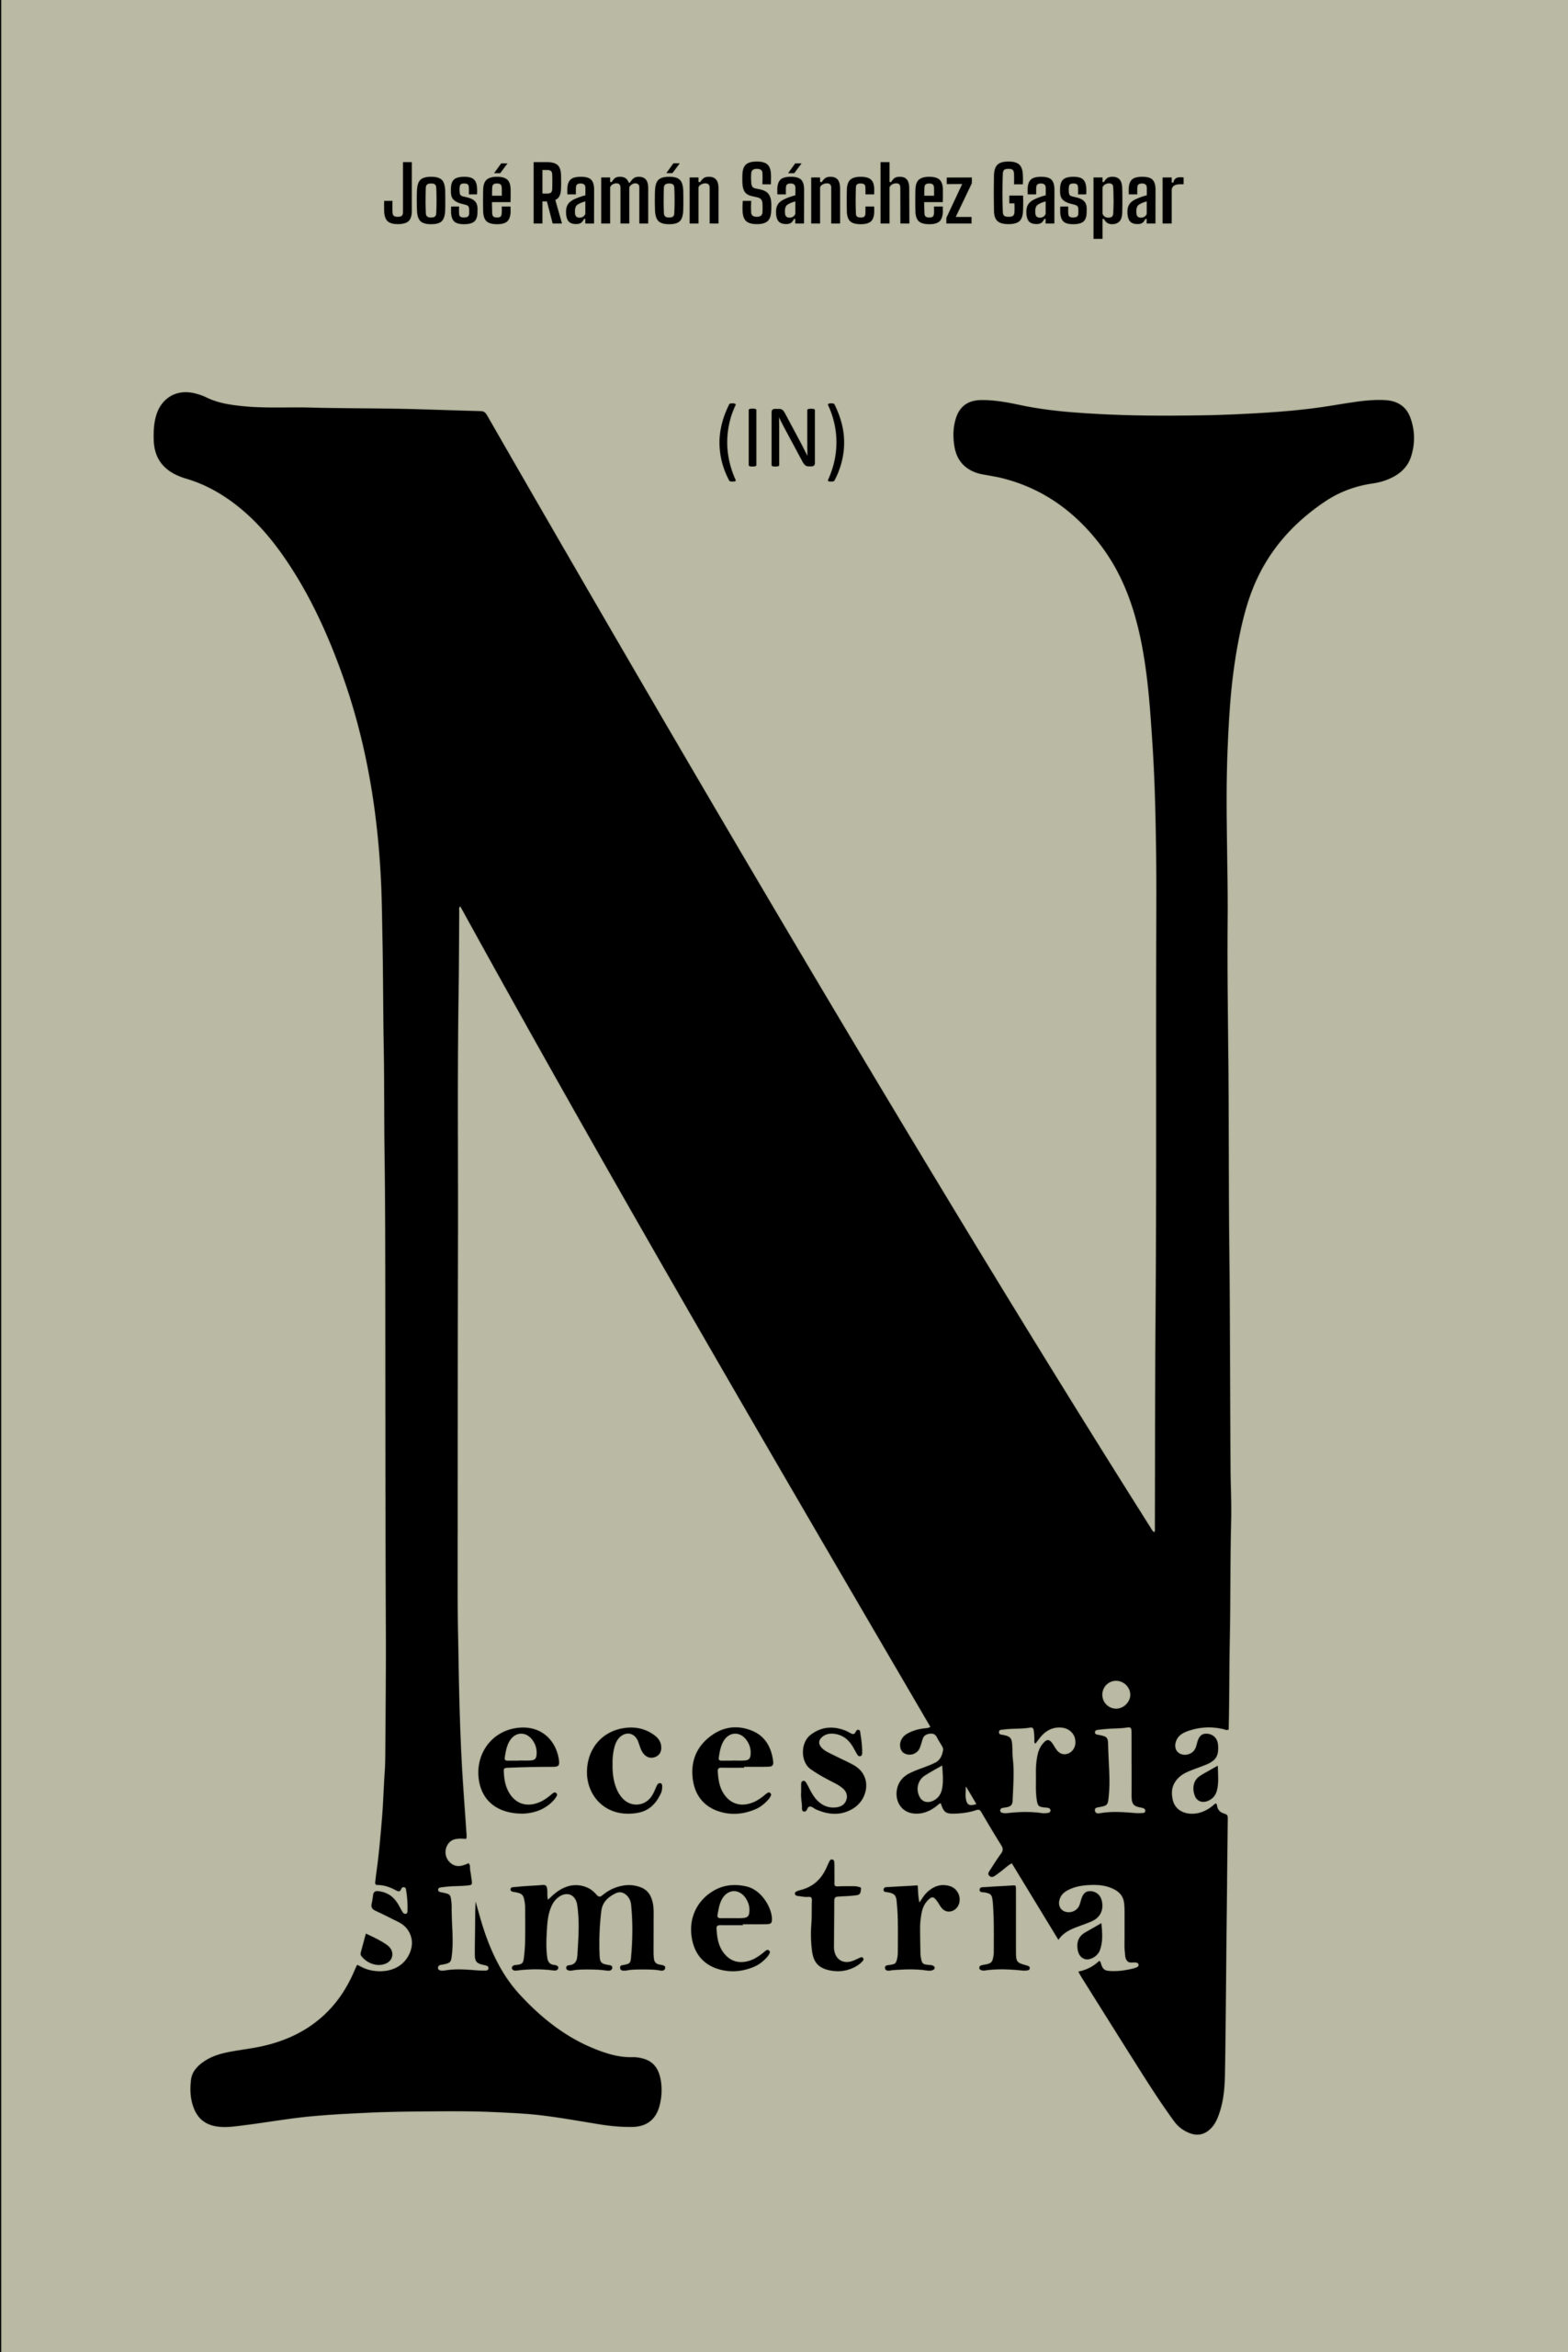 (In) Necesaria simetría, de José Ramón Sánchez Gaspar